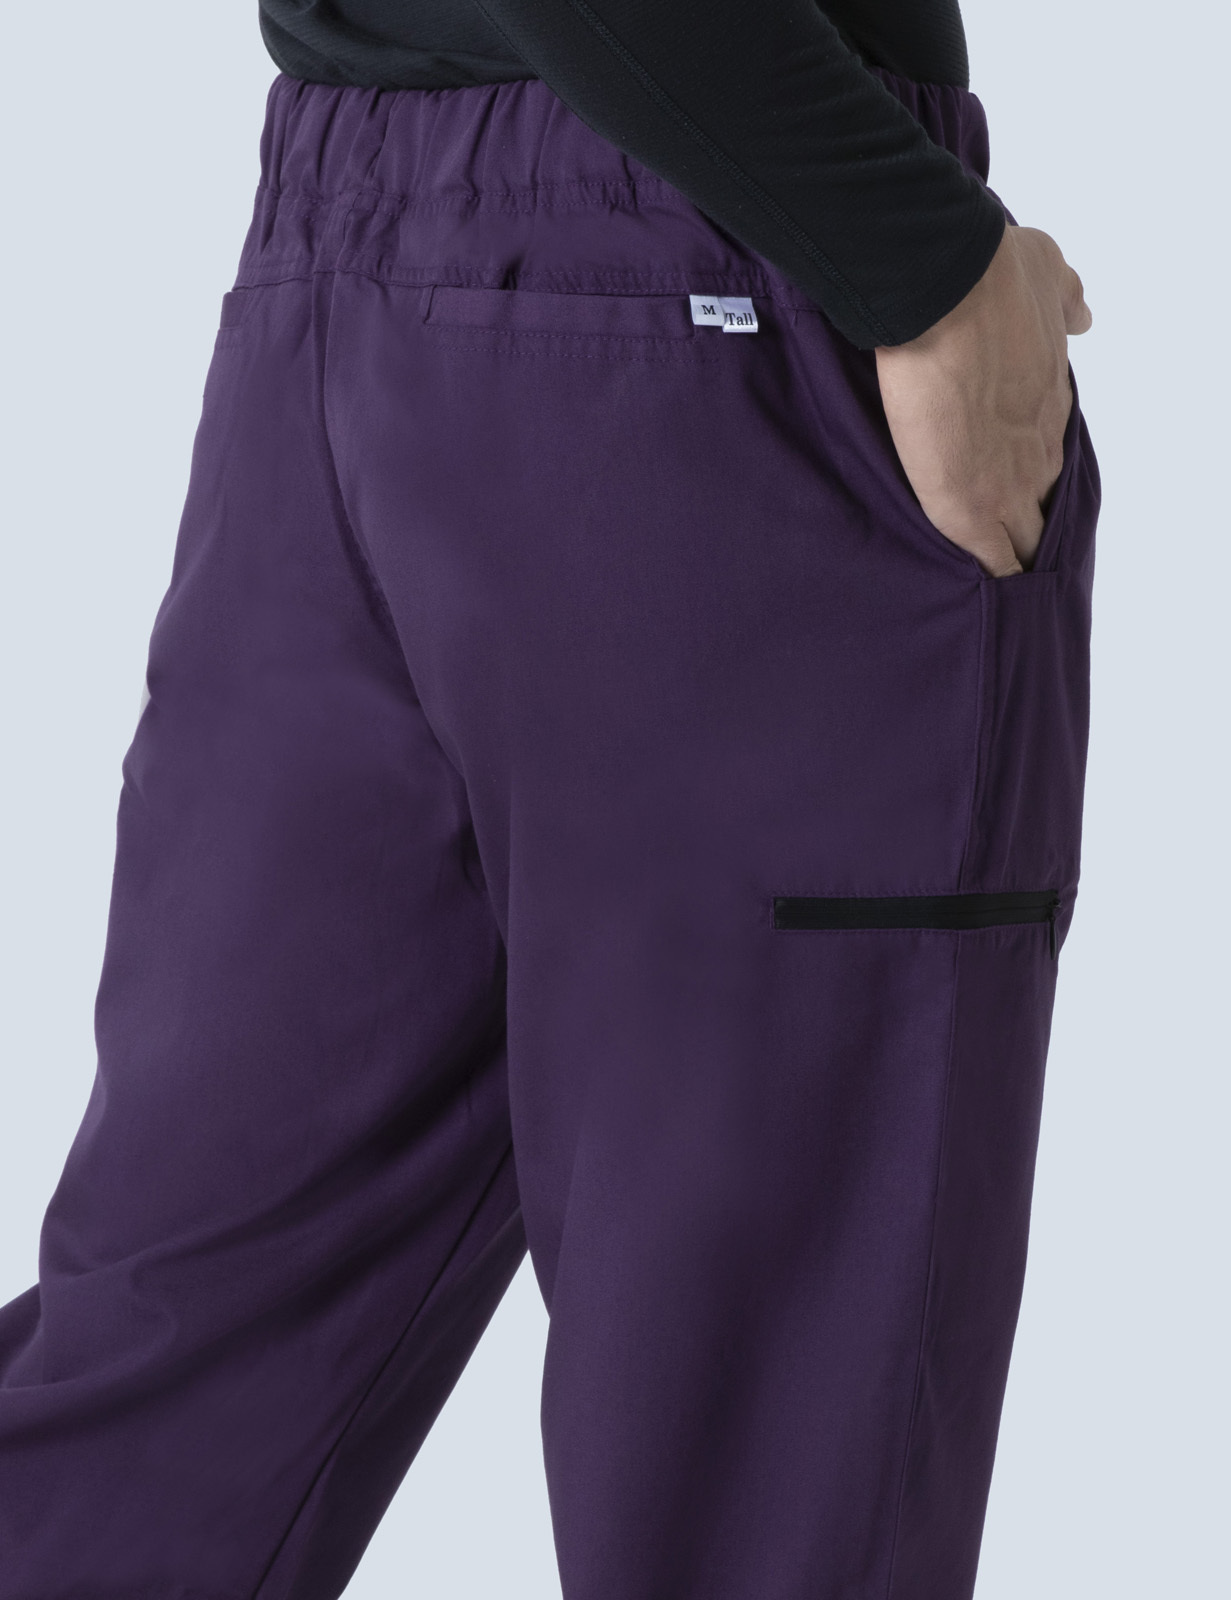 Men's Utility Pants - Aubergine - X Large